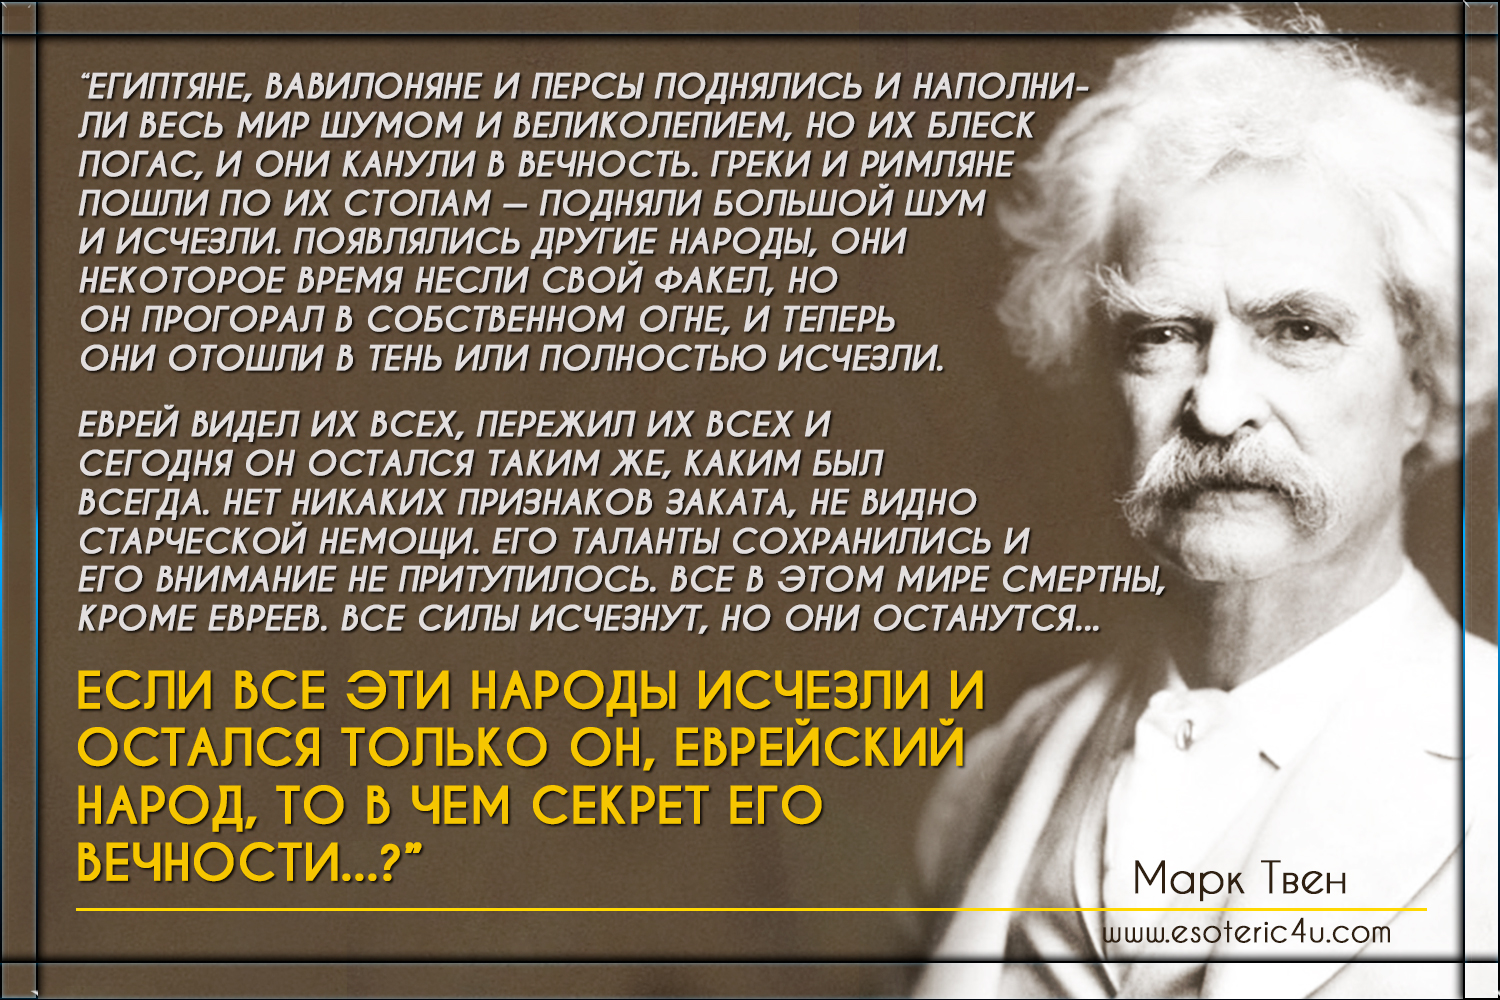 Mark_Twain.jpg - 1.07 MB